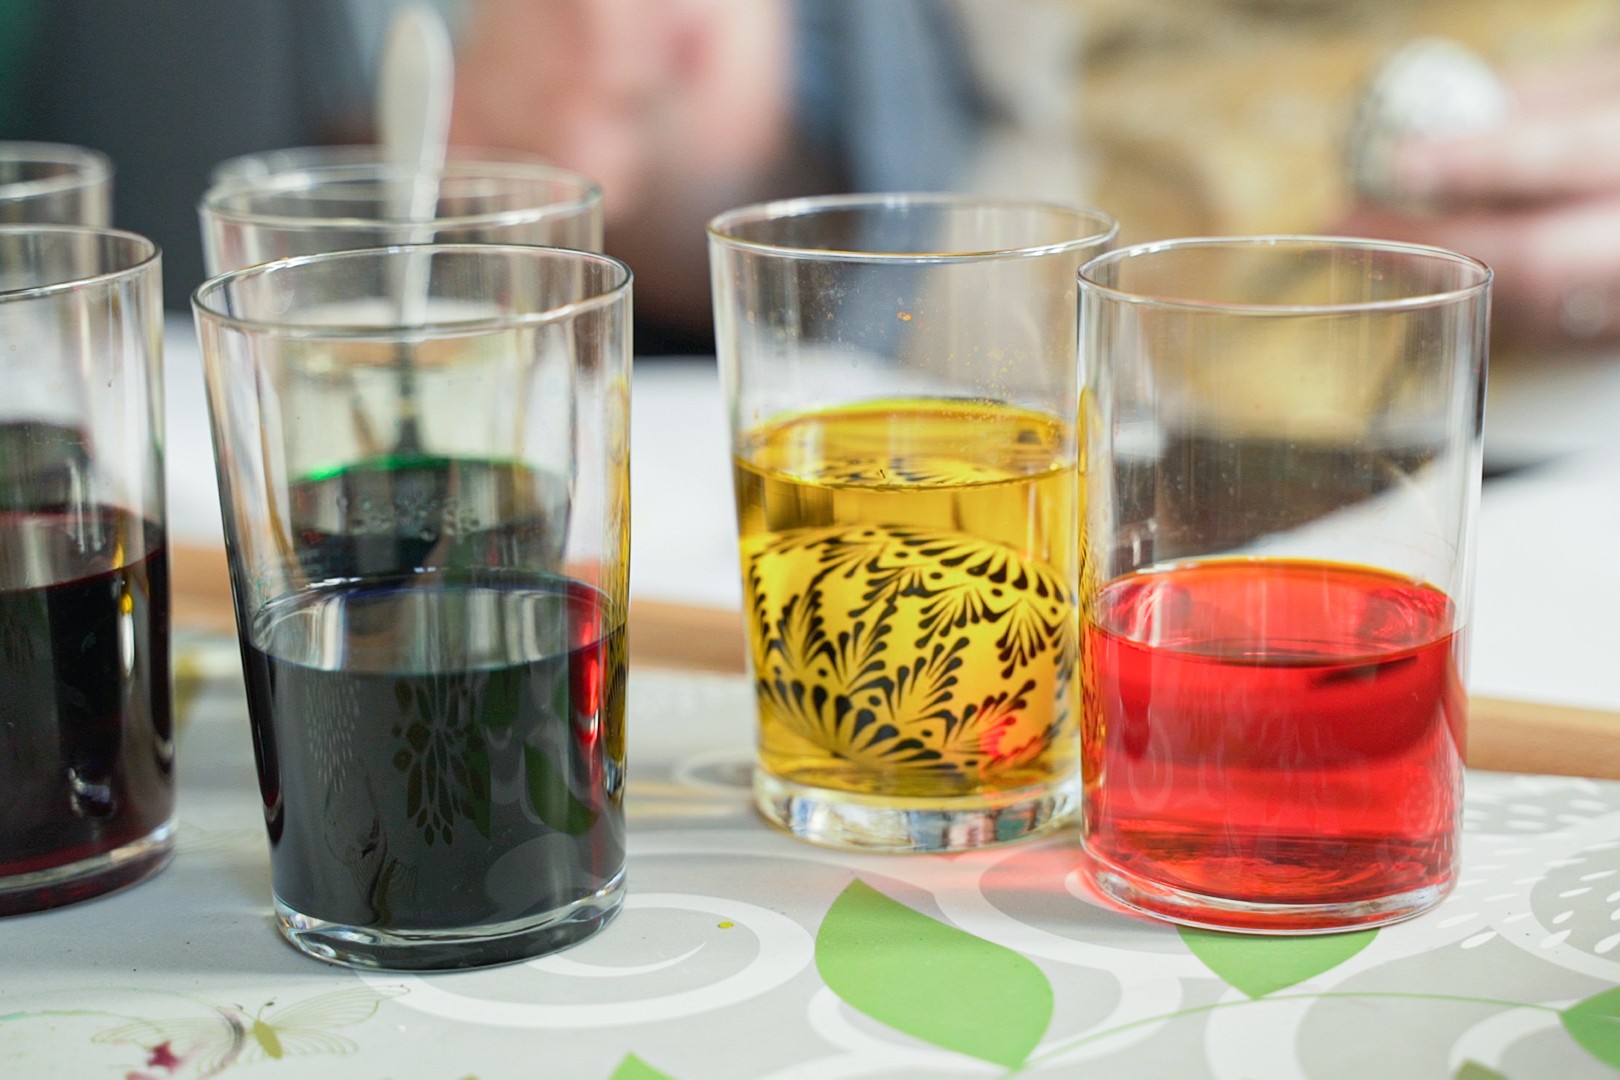 cztery szklanki wypełnione do połowy kolorowym płynem, dwie zielonym, jedna żółtym, a jedna czerwonym. W szklance z żółtym płynem zamoczone jajko